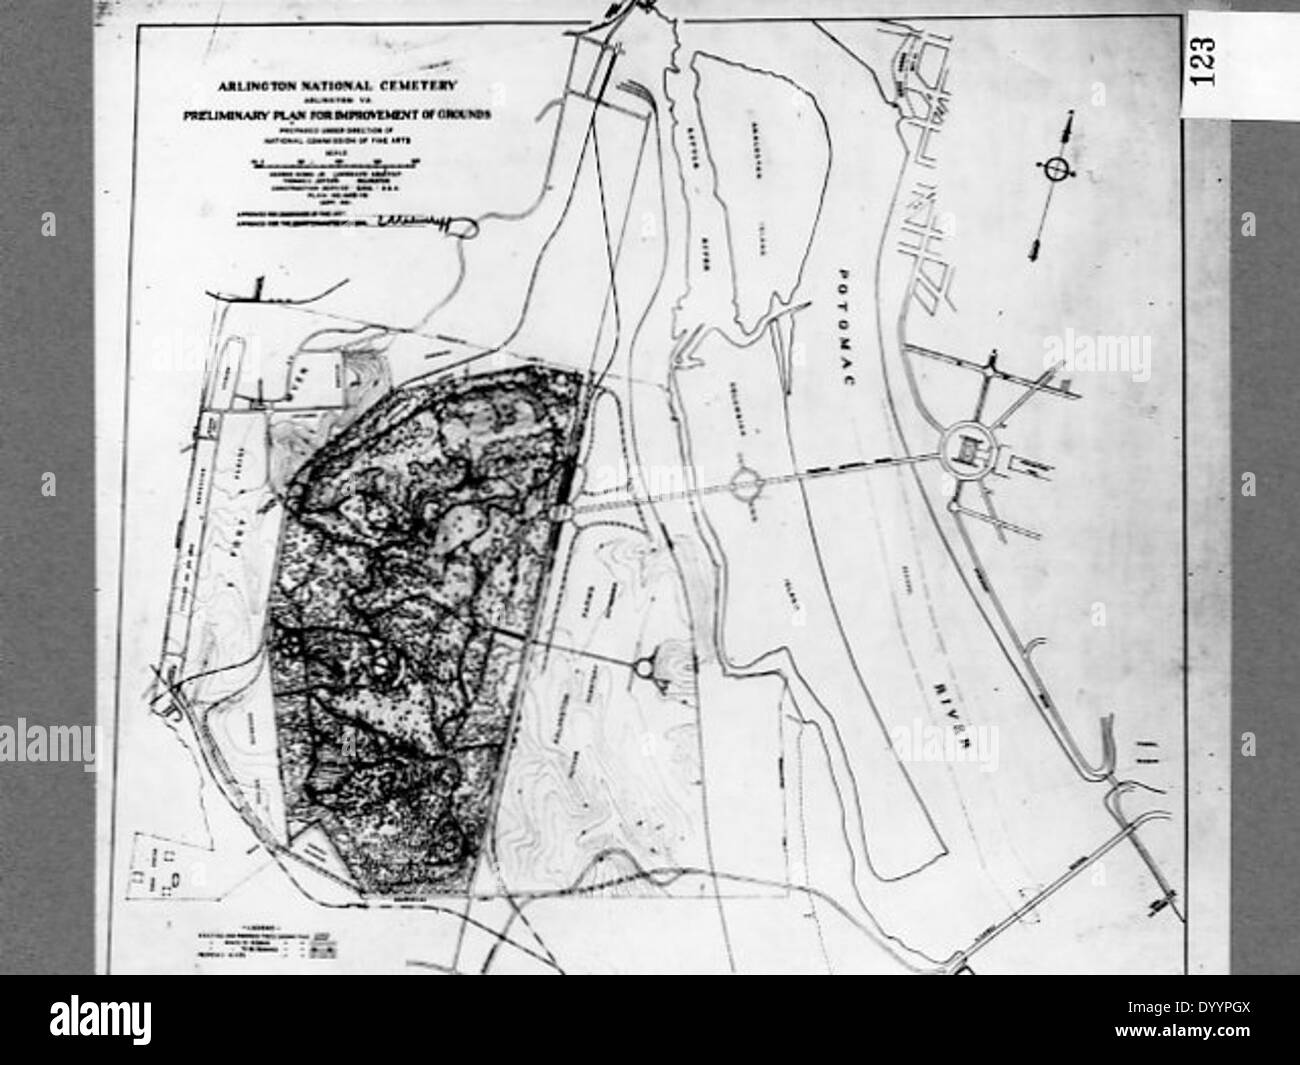 Map Of Arlington National Cemetery DYYPGX 